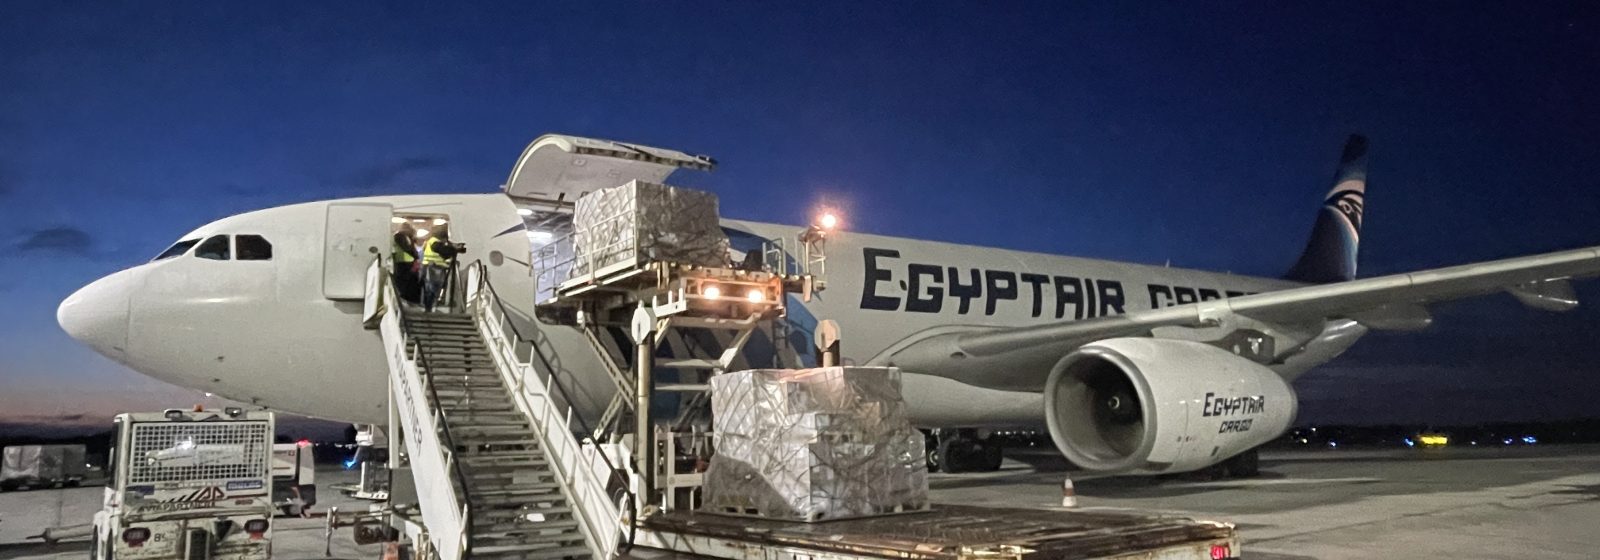 Een vliegtuig van Egyptair met ruim 40 ton medisch hulpmateriaal